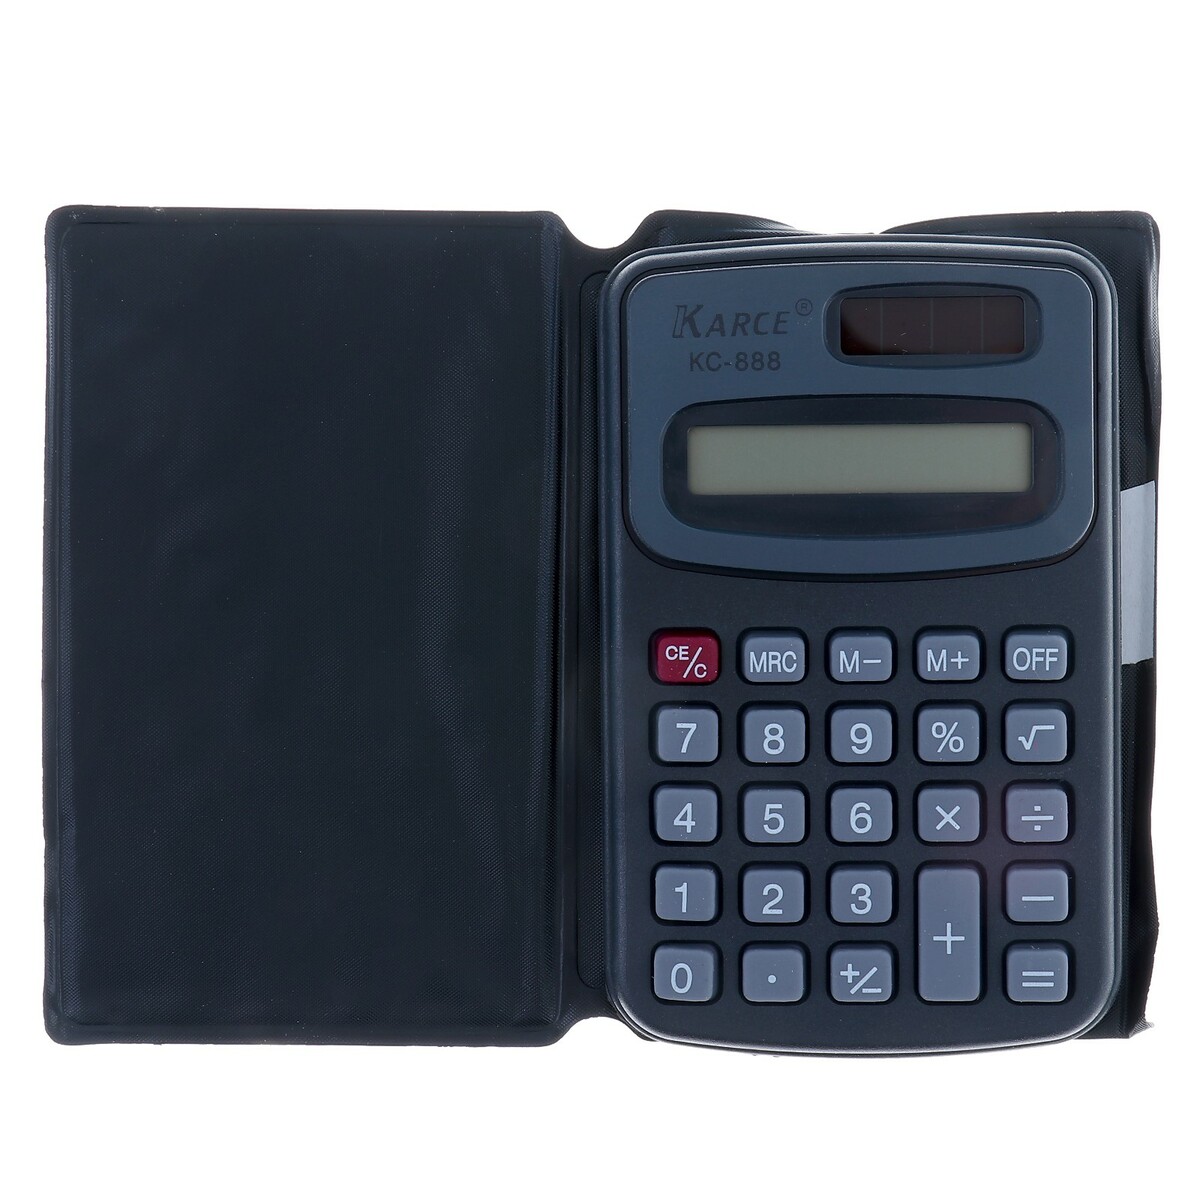 Калькулятор карманный с чехлом 8 - разрядный, kc - 888, работает от батарейки (таблетка ag 10) калькулятор карманный с чехлом 8 разрядный kc 888 работает от батарейки таблетка ag 10